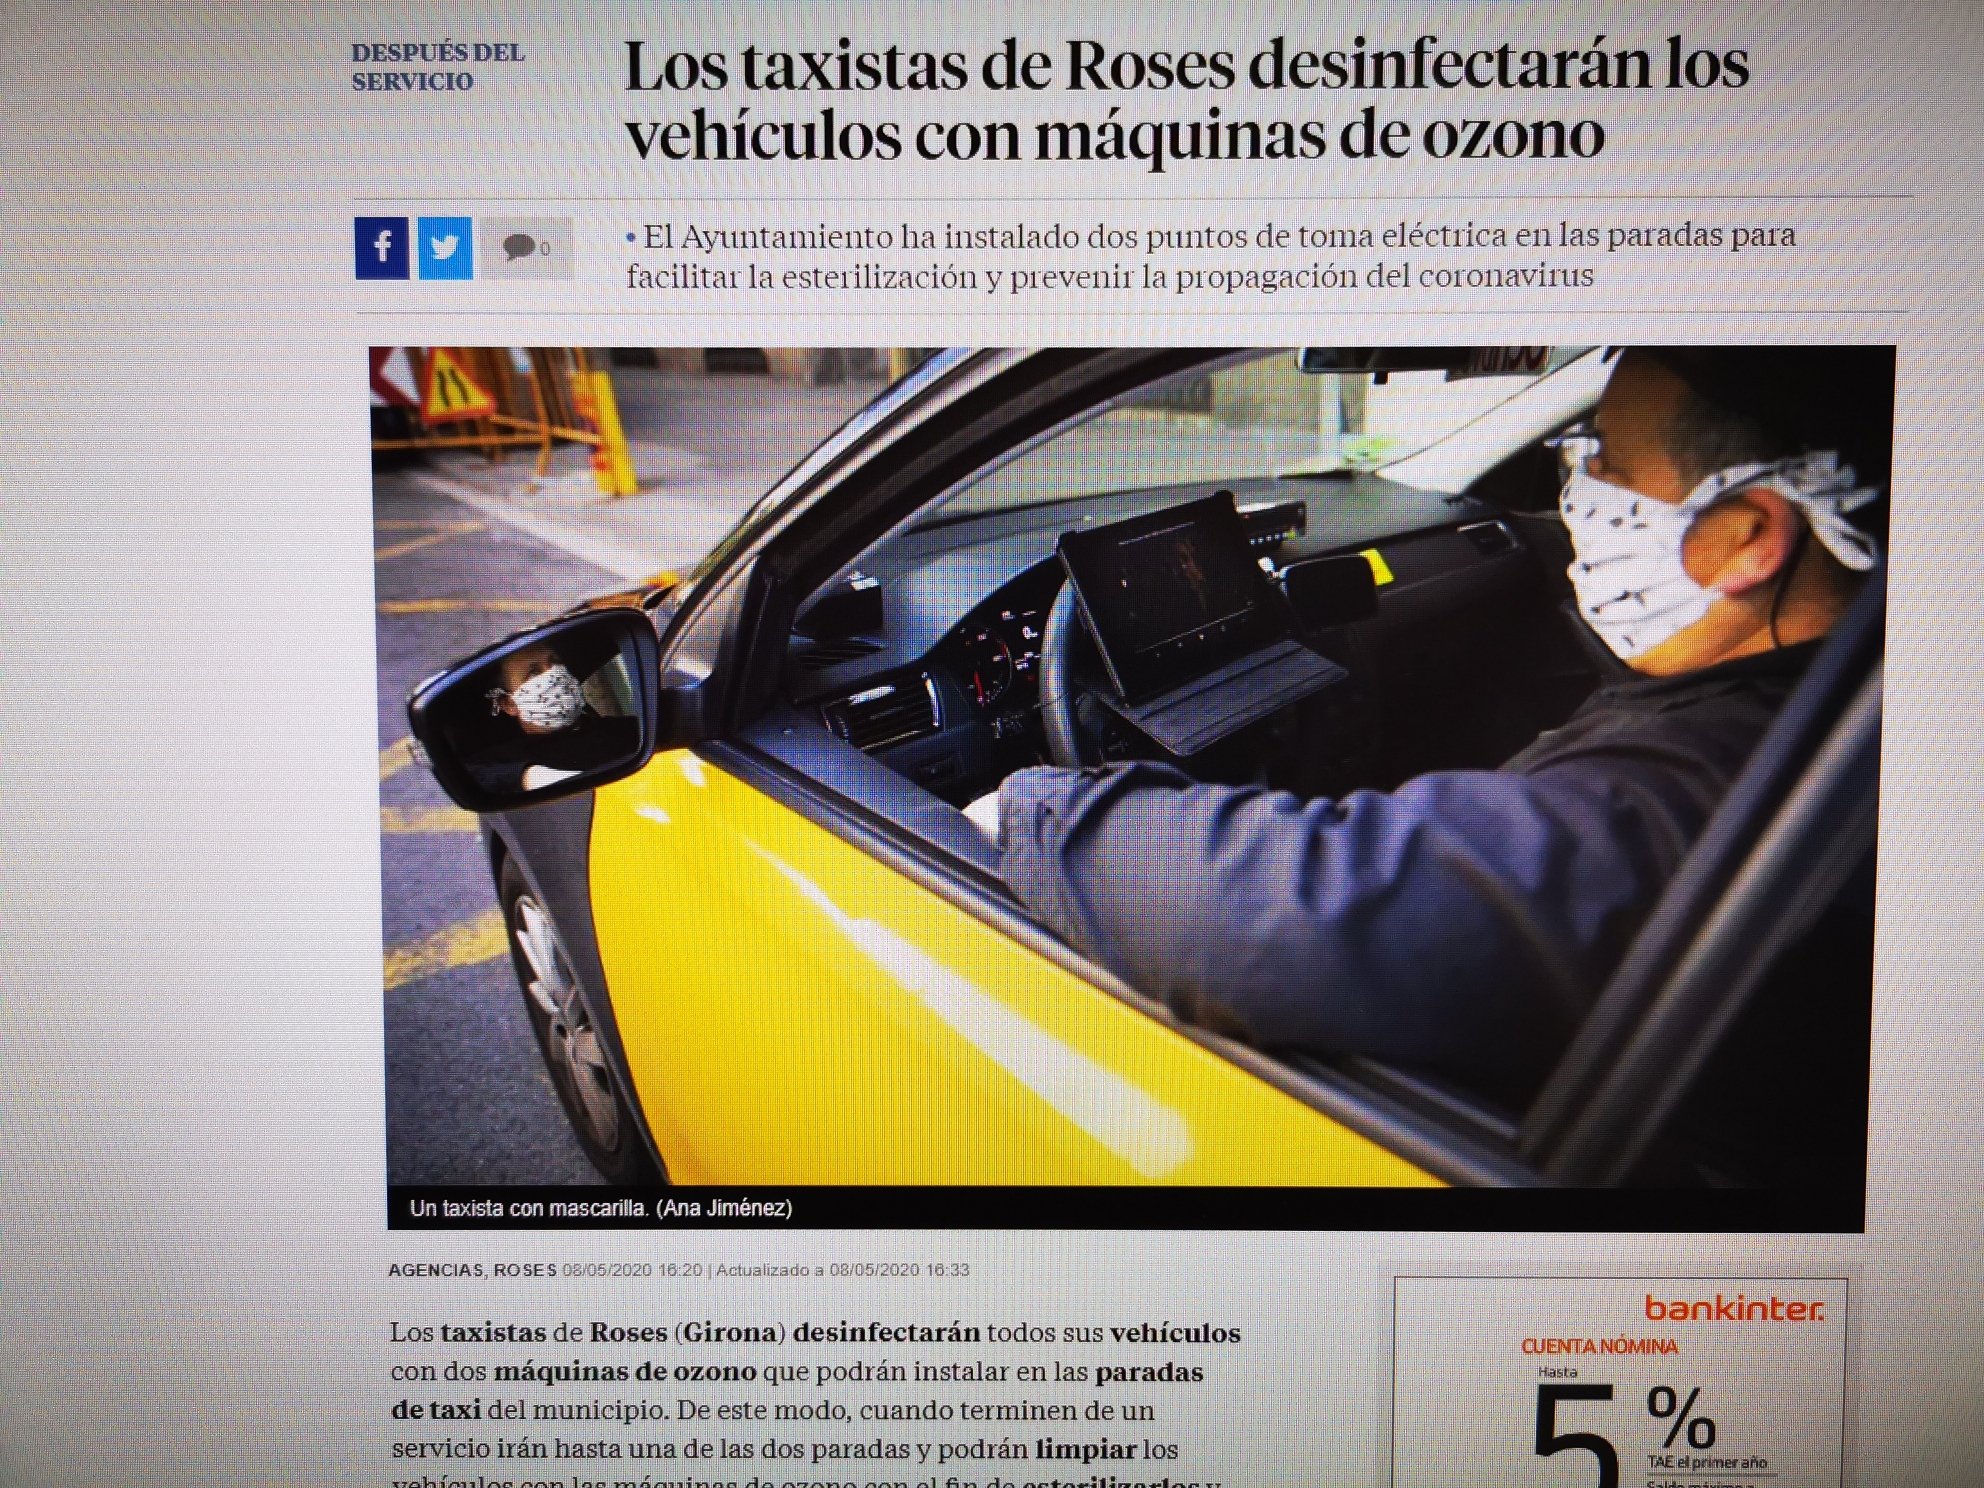 Los taxistas de Roses desinfectarán sus vehículos con máquinas de ozono